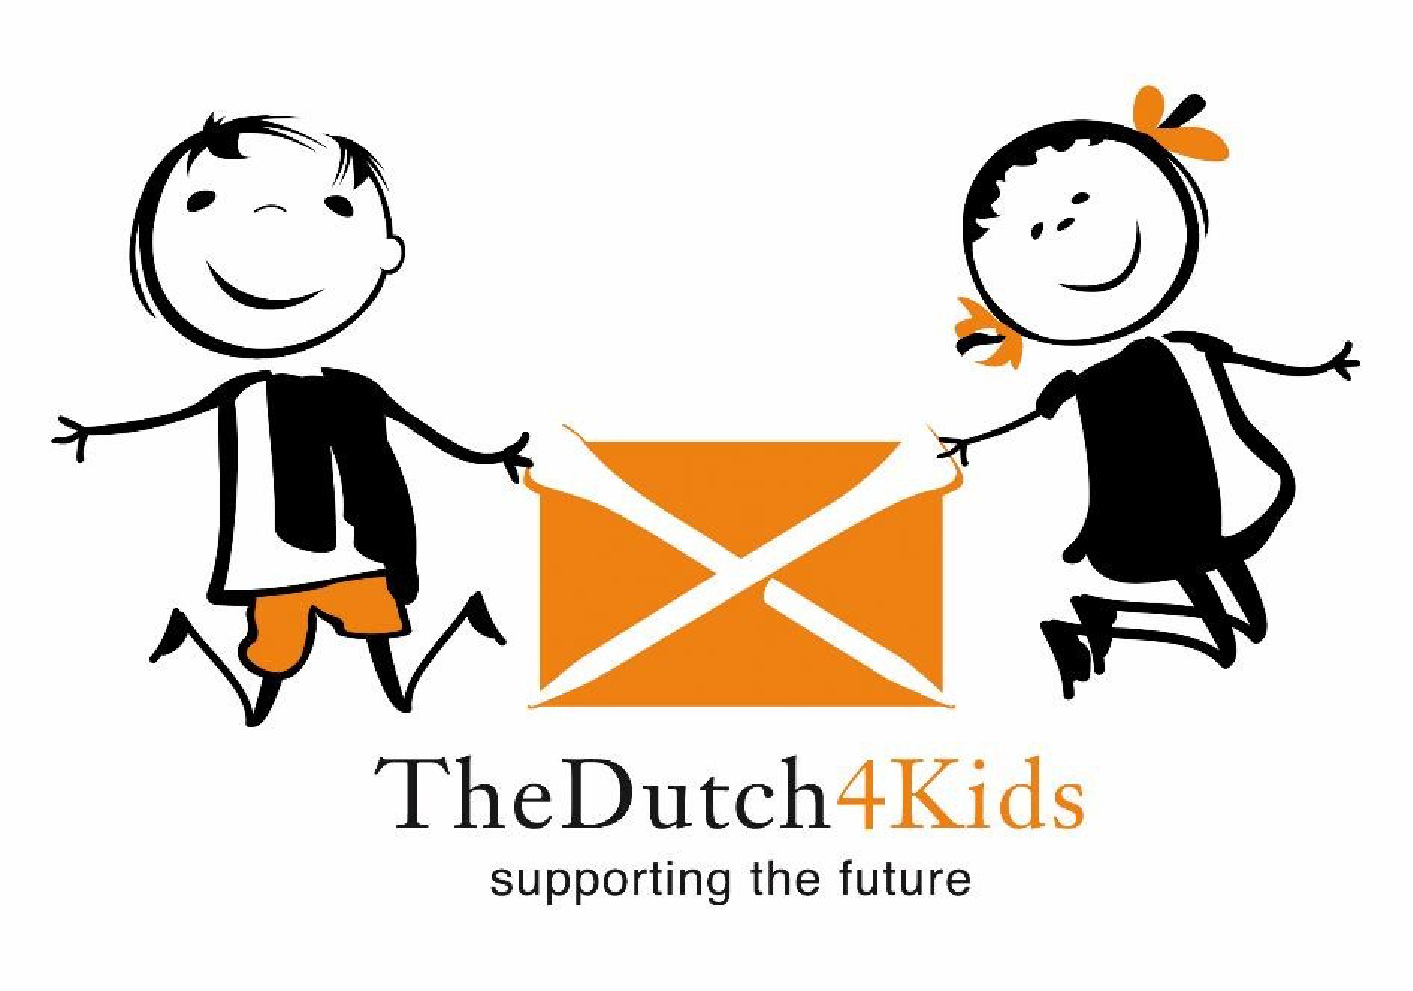 The Dutch 4 Kids